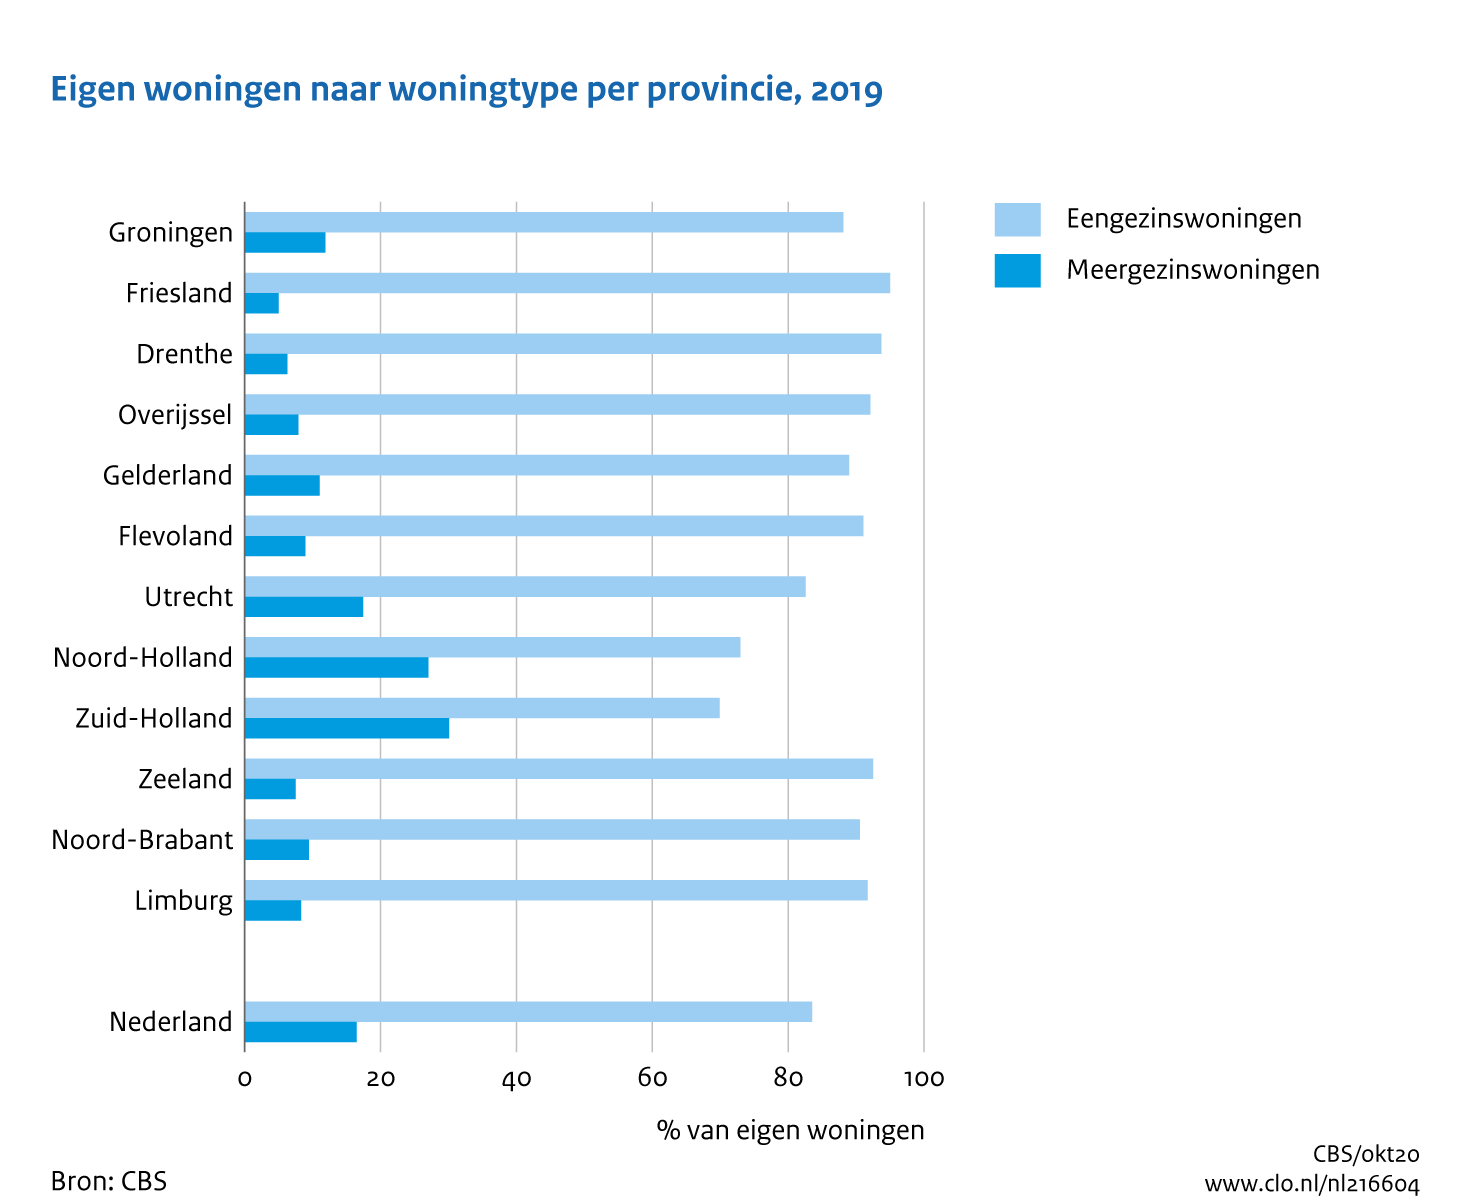 Figuur Eigen woningen naar woningtype per provincie, 2019. In de rest van de tekst wordt deze figuur uitgebreider uitgelegd.